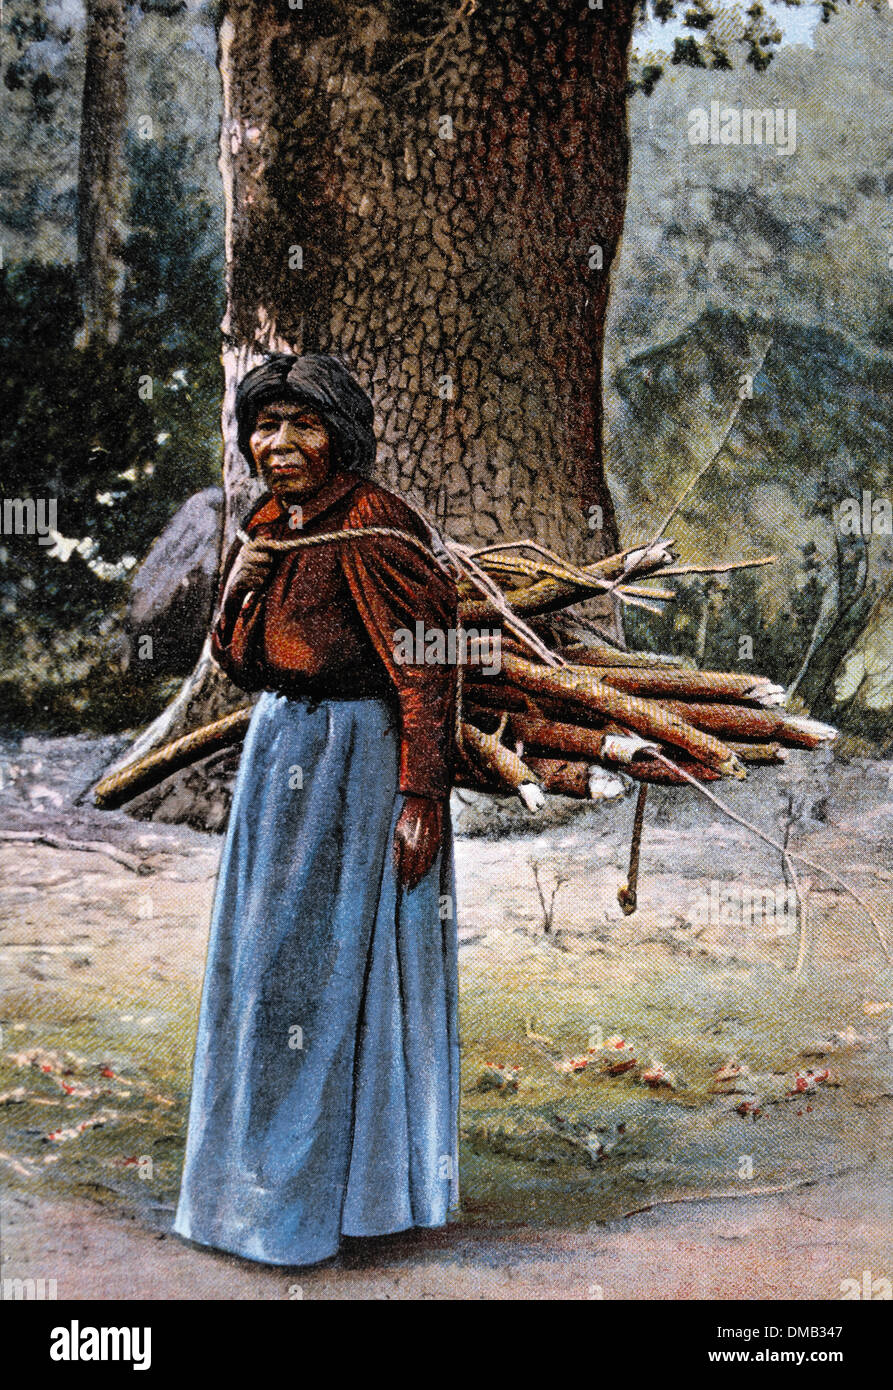 Anziani Yosemite Native American donna Indiana che trasportano i registri, Yosemite Valley, California, USA, 1910 Foto Stock